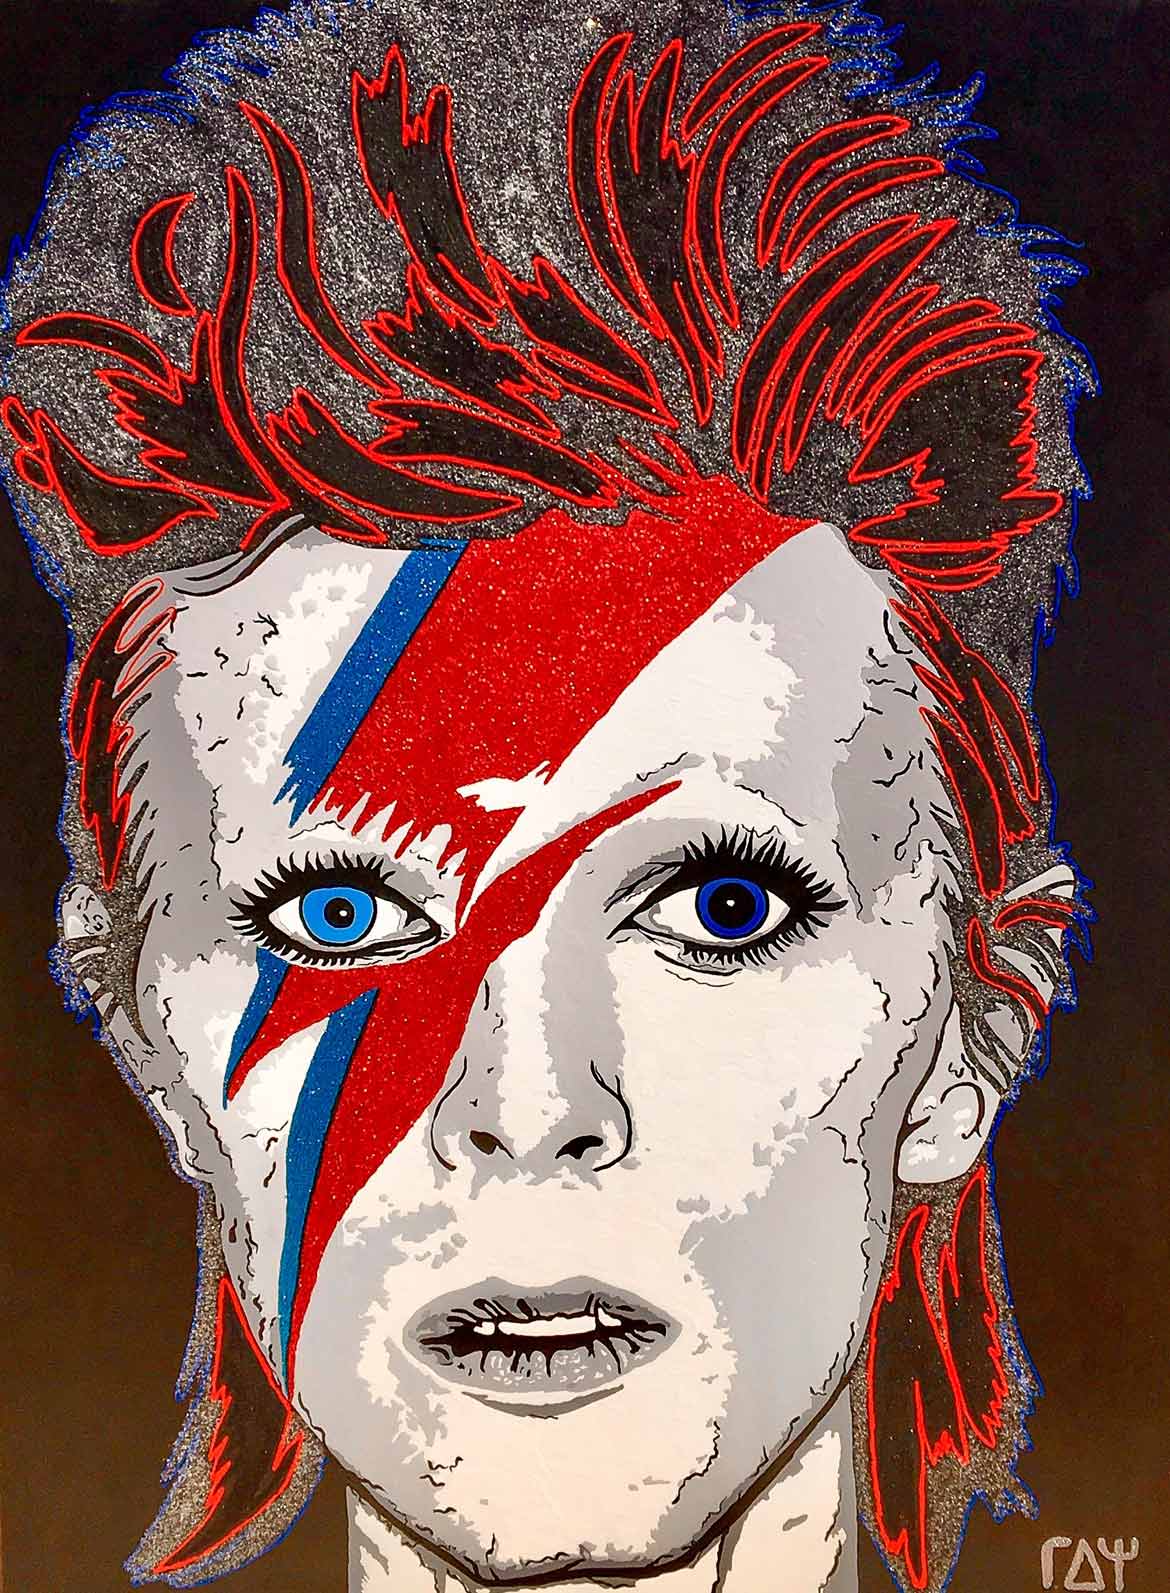 Ziggy Stardust Alias David Bowie